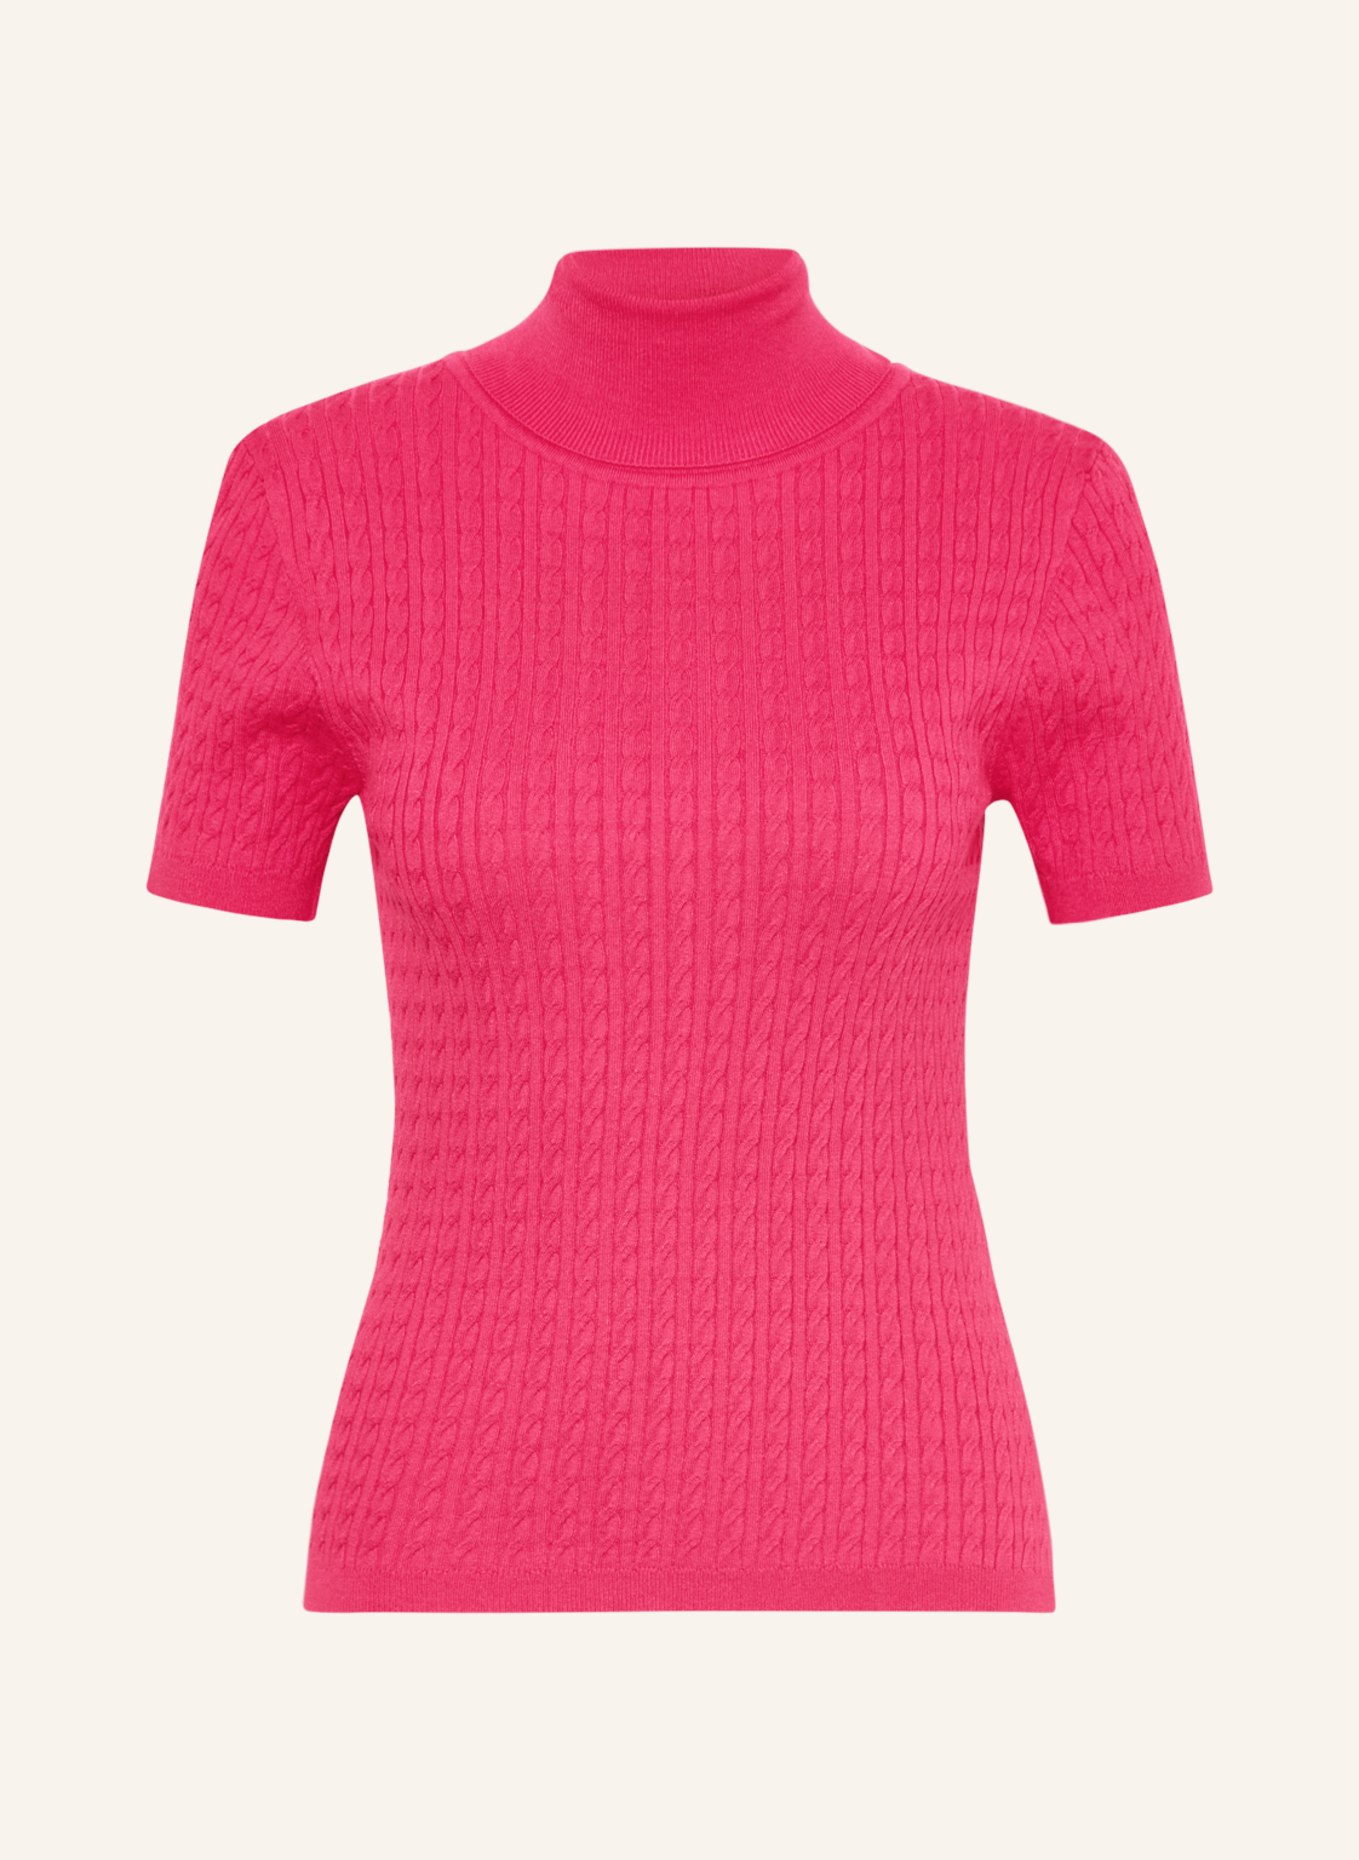 darling harbour Knit shirt, Color: PINK (Image 1)